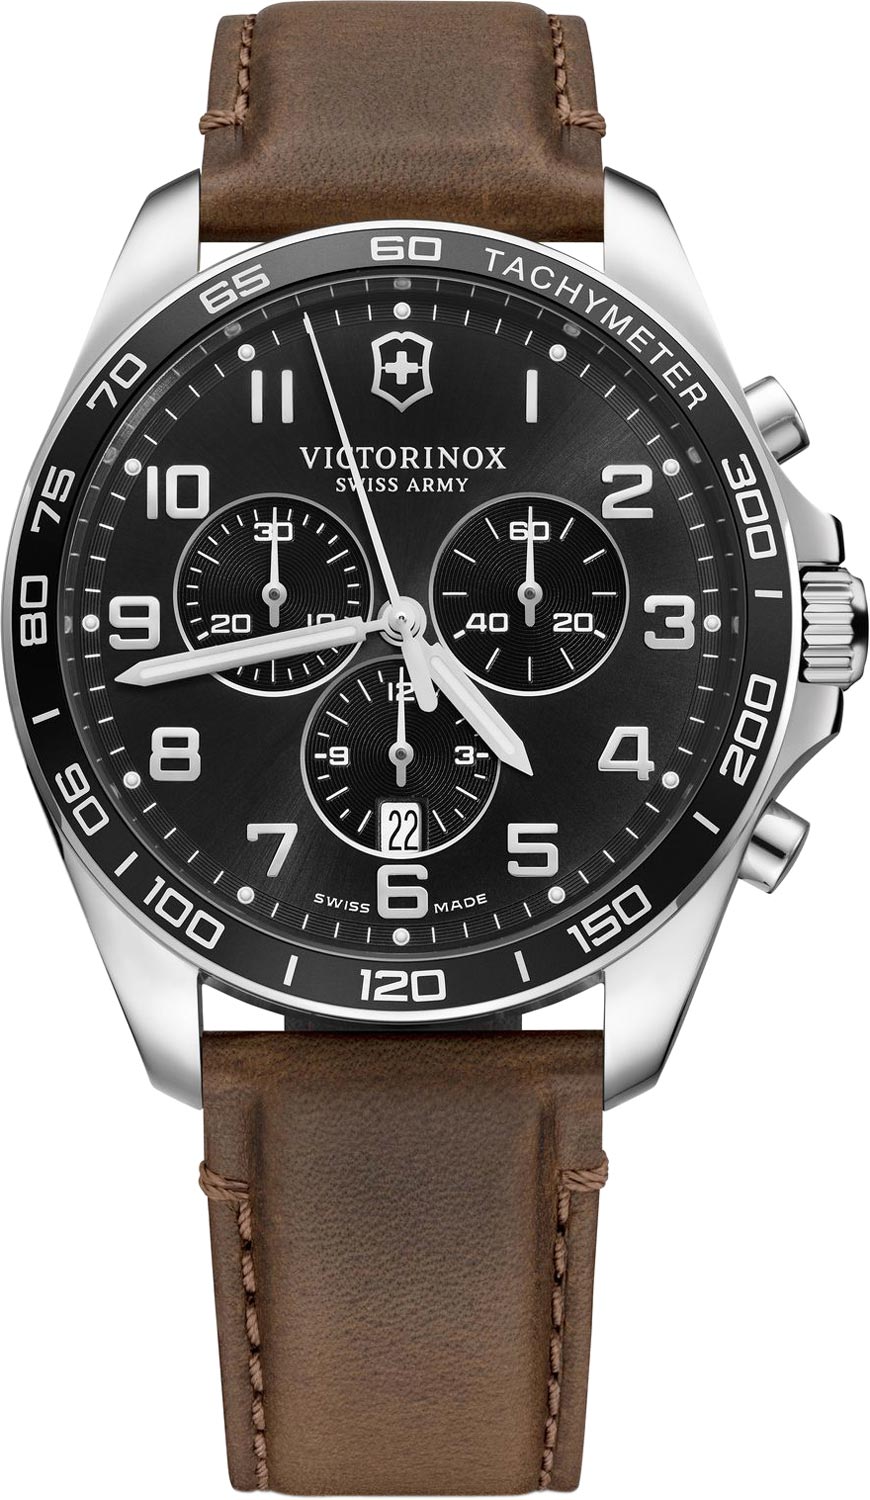 Швейцарские наручные часы Victorinox 241928 с хронографом